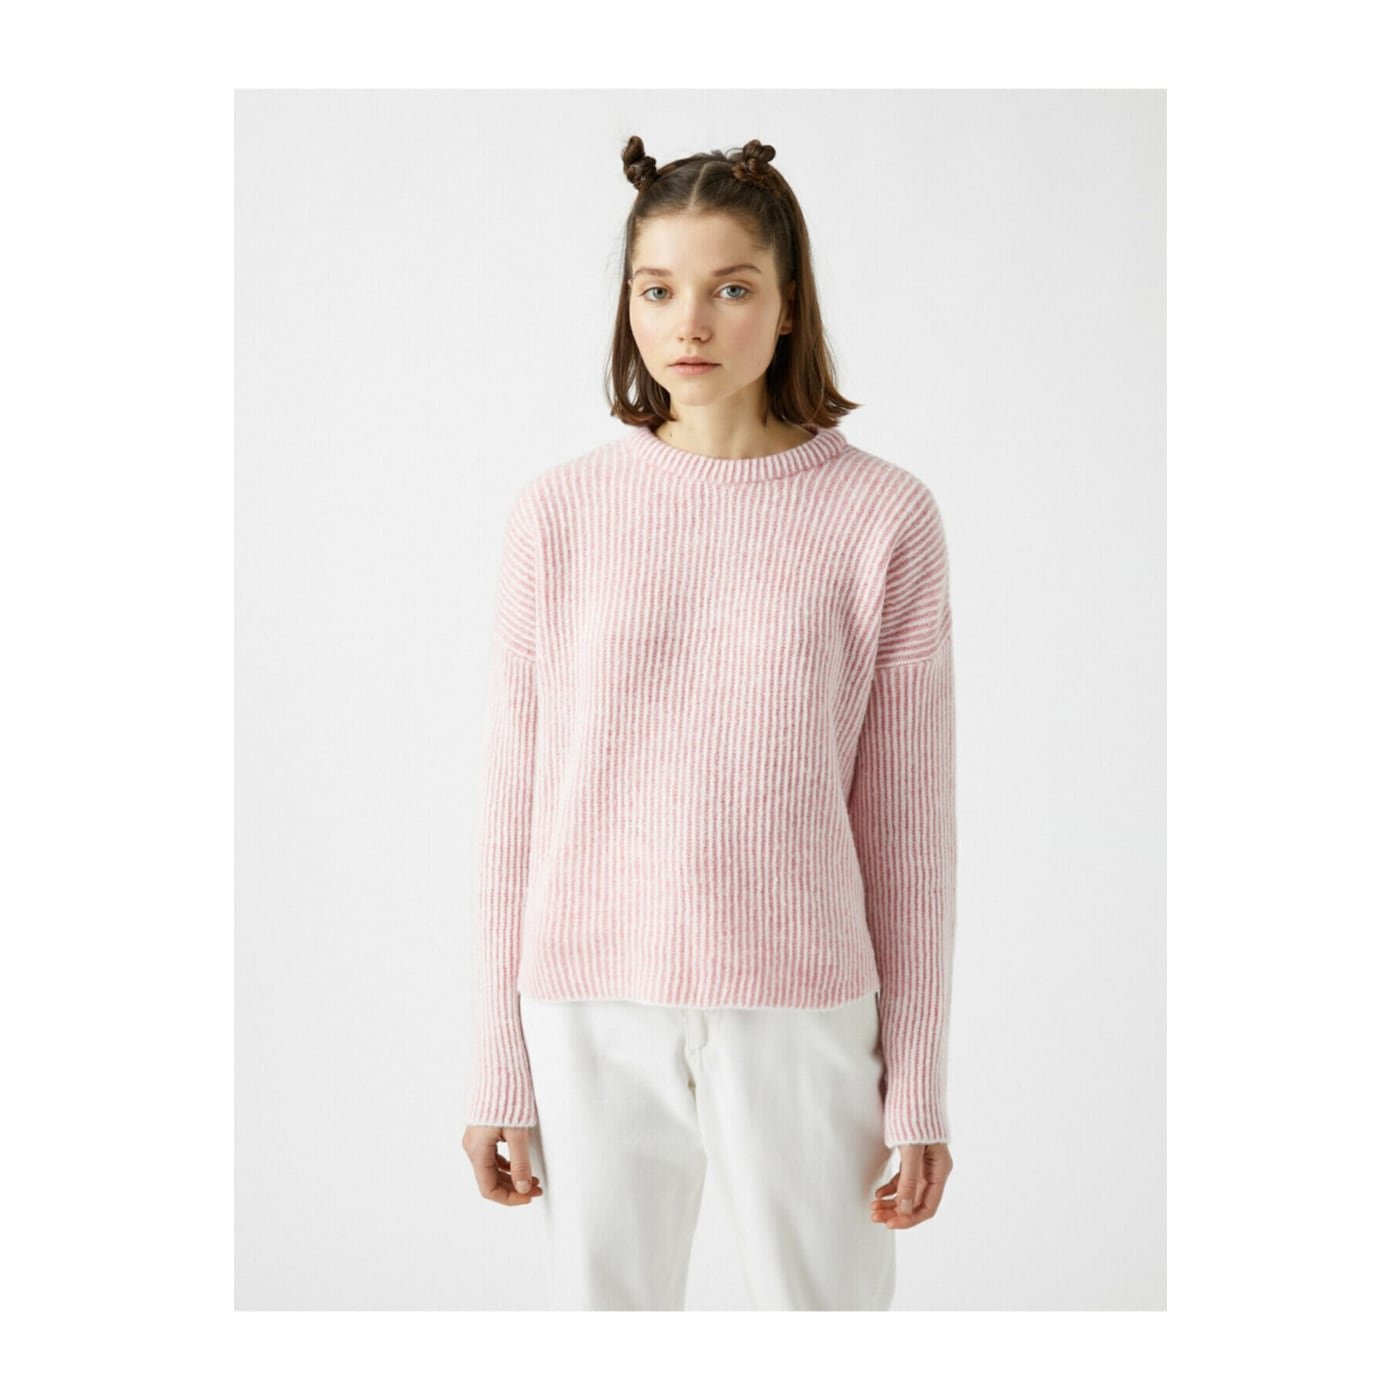 Koton Women's Pink Crew Neck Long Sleeve Knitwear Sweater